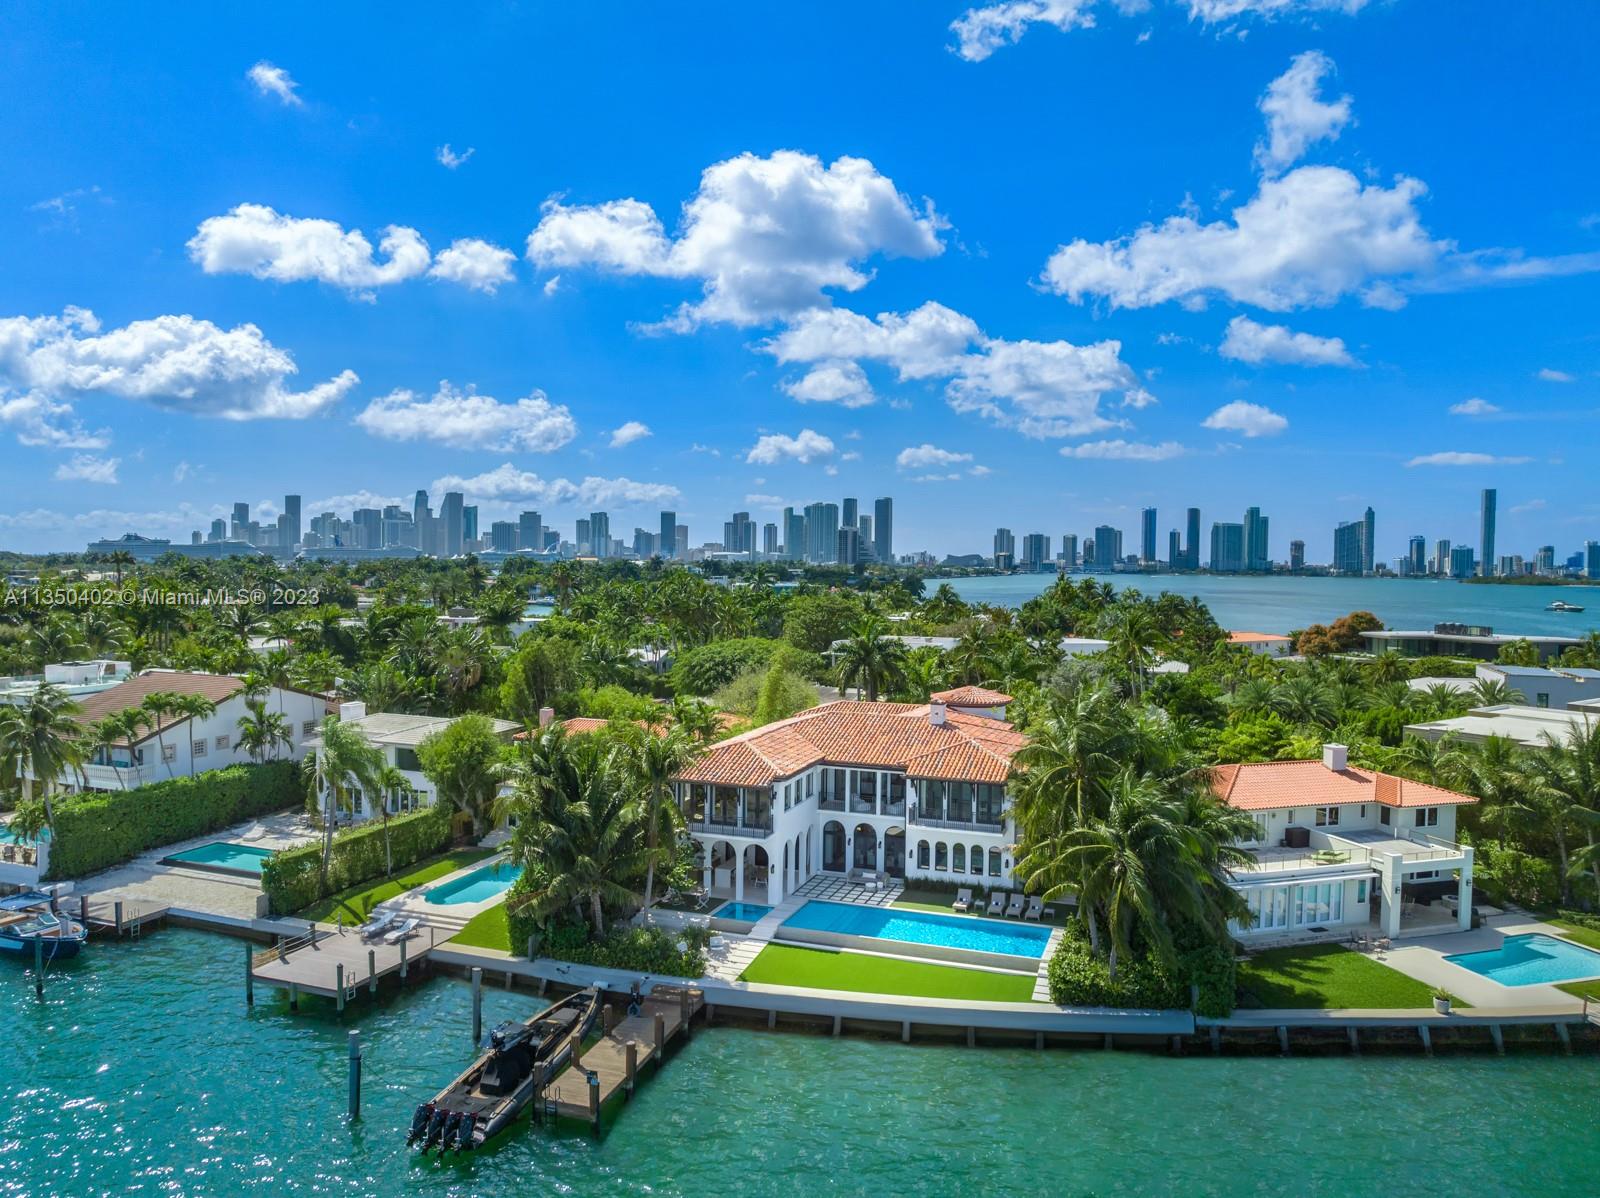 Di Lido Island homes for sale Miami Beach